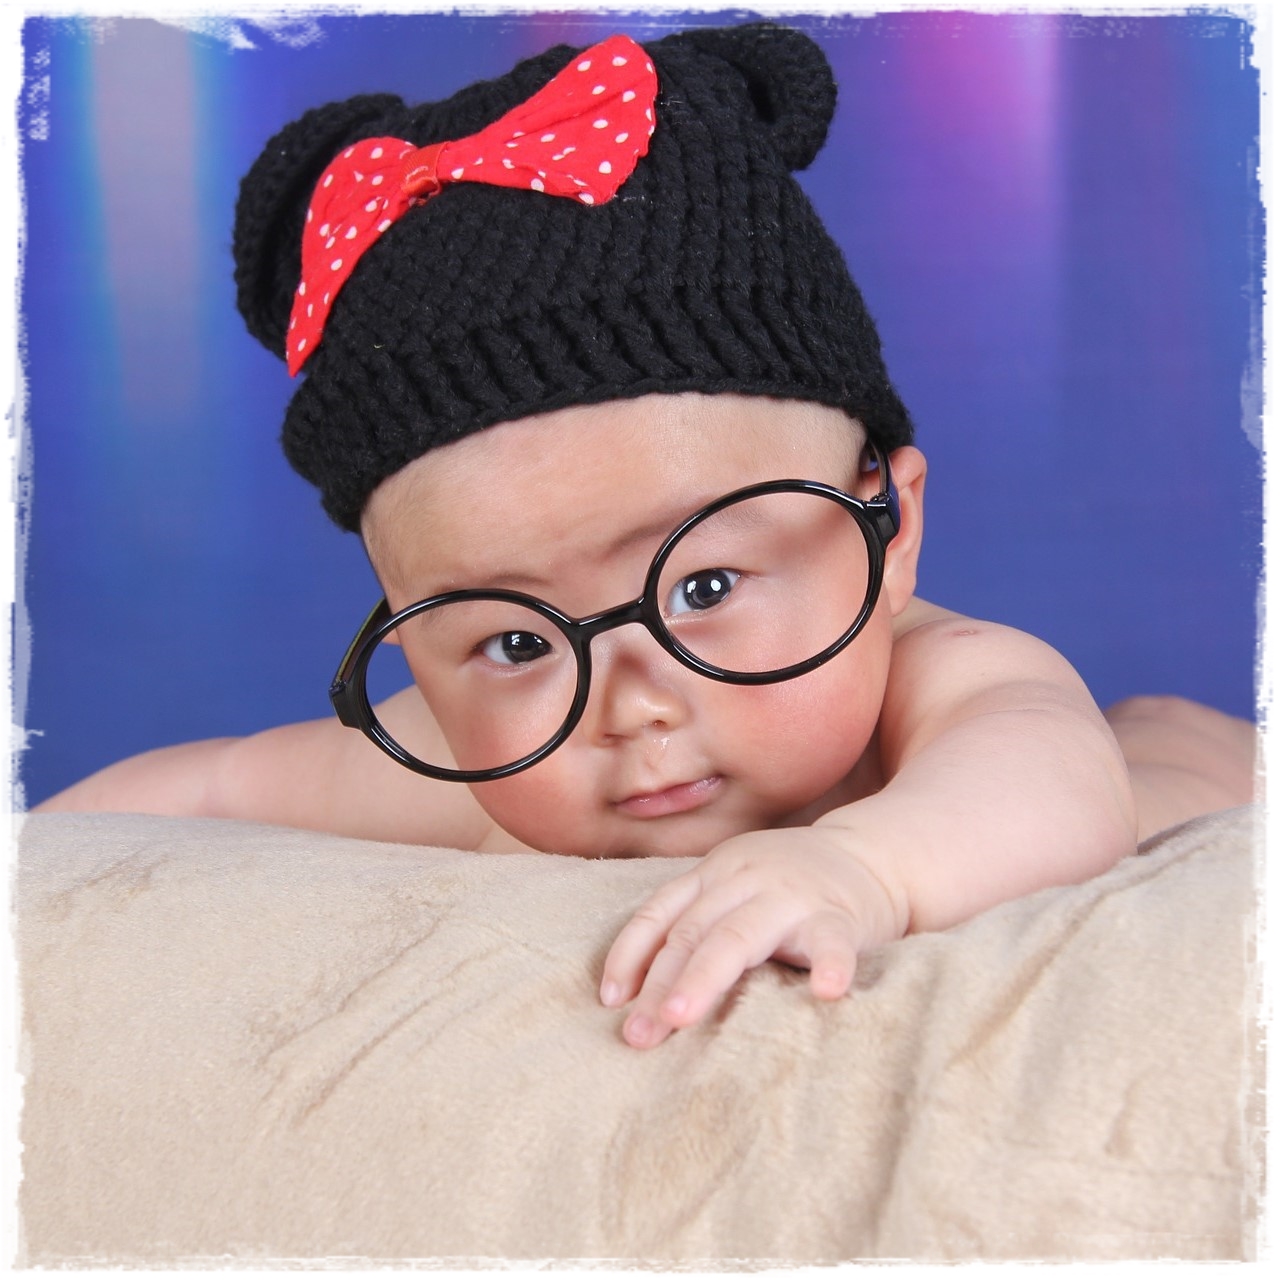 Inteligencia del bebe. Foto de un bebé con gorro y gafas.